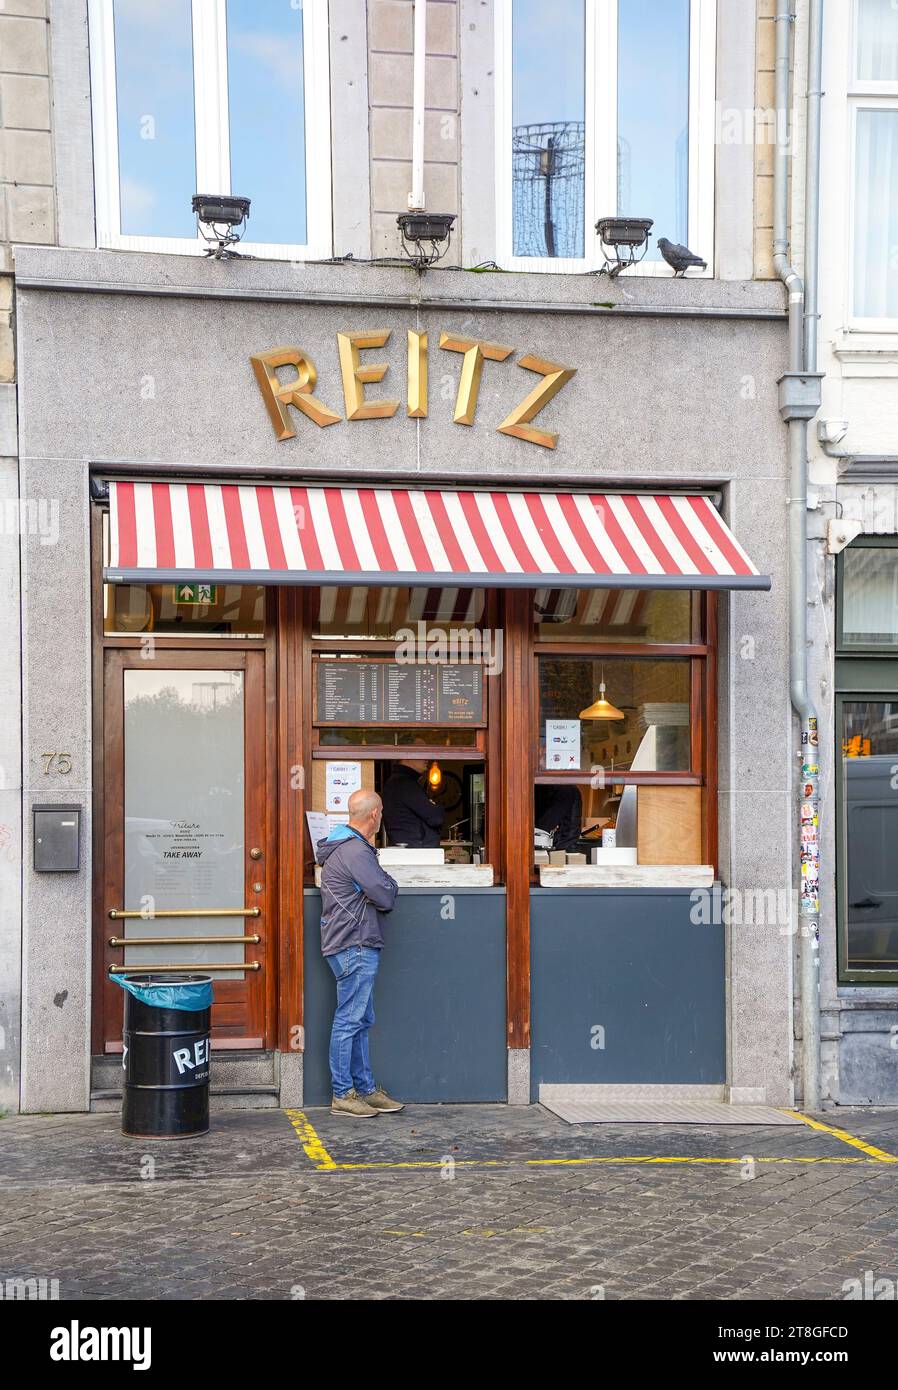 Berühmte, niederländisch-belgische Pommes, Frituur - Restaurant Reitz am Markt, Maastricht, Limburg, Niederlande. Stockfoto